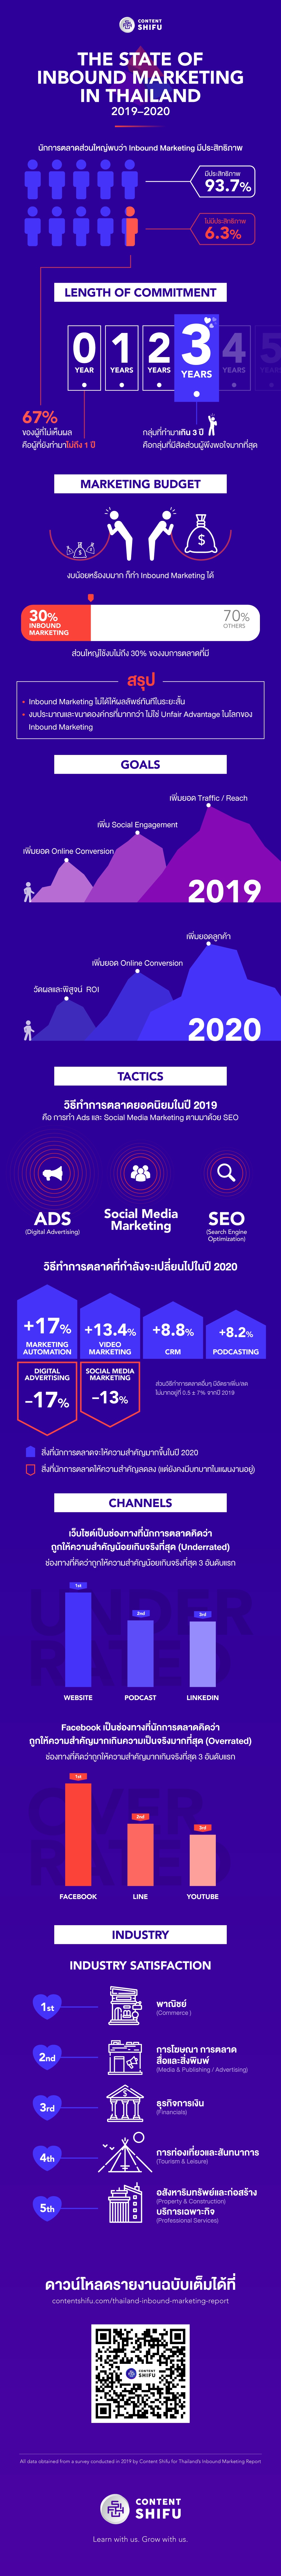 แนวโน้มการตลาดไทยปี 2020 ส่องดูสถิติจาก Inbound Marketing Report 